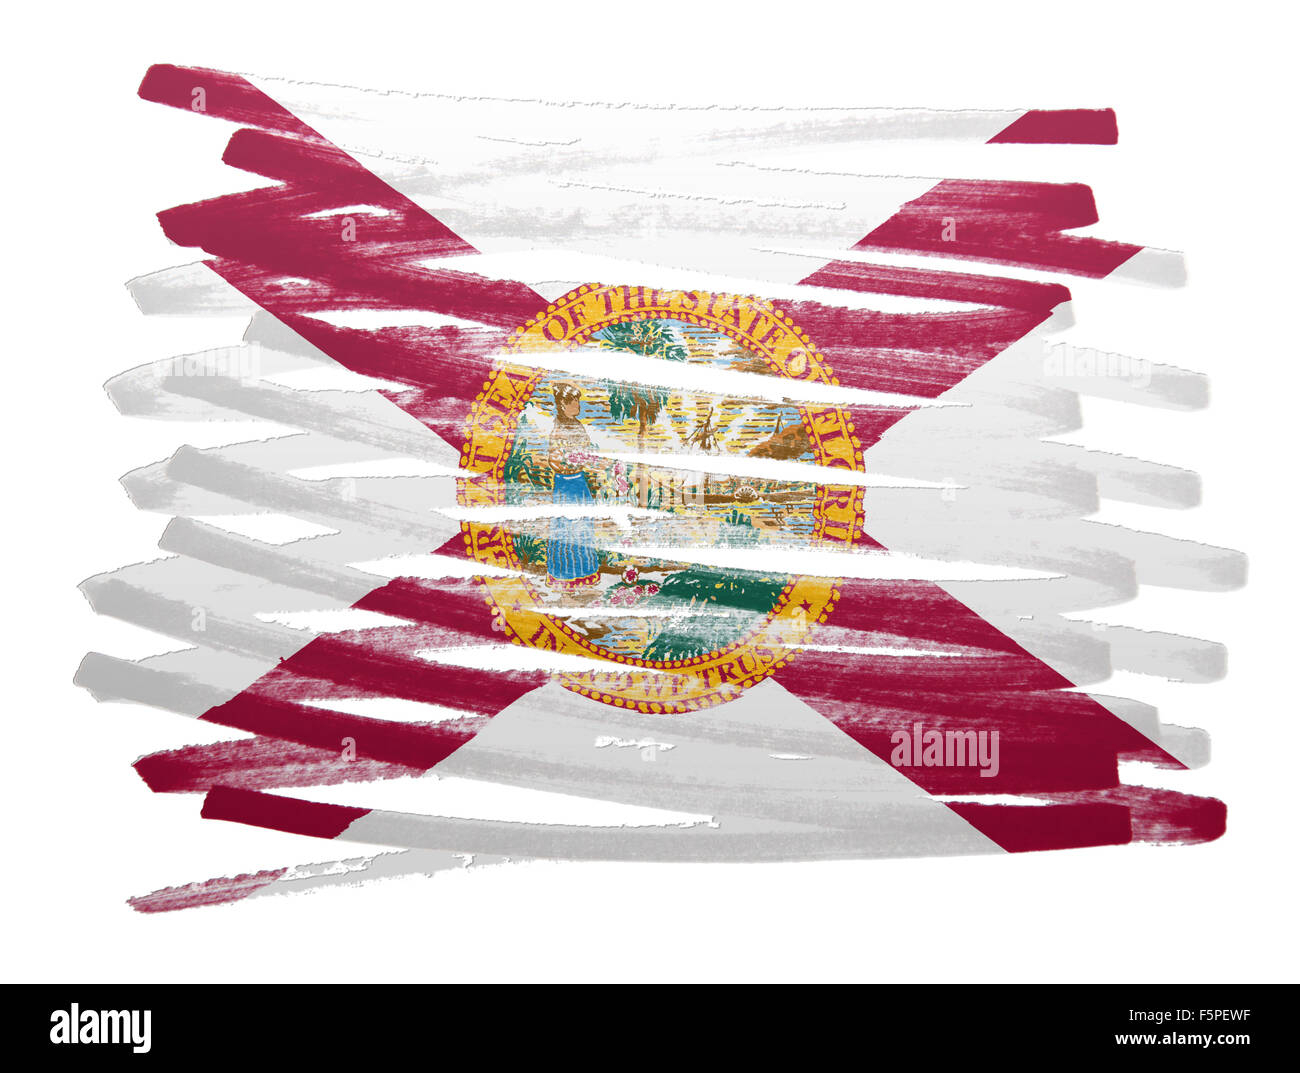 Flag illustration réalisée avec stylo - Floride Banque D'Images